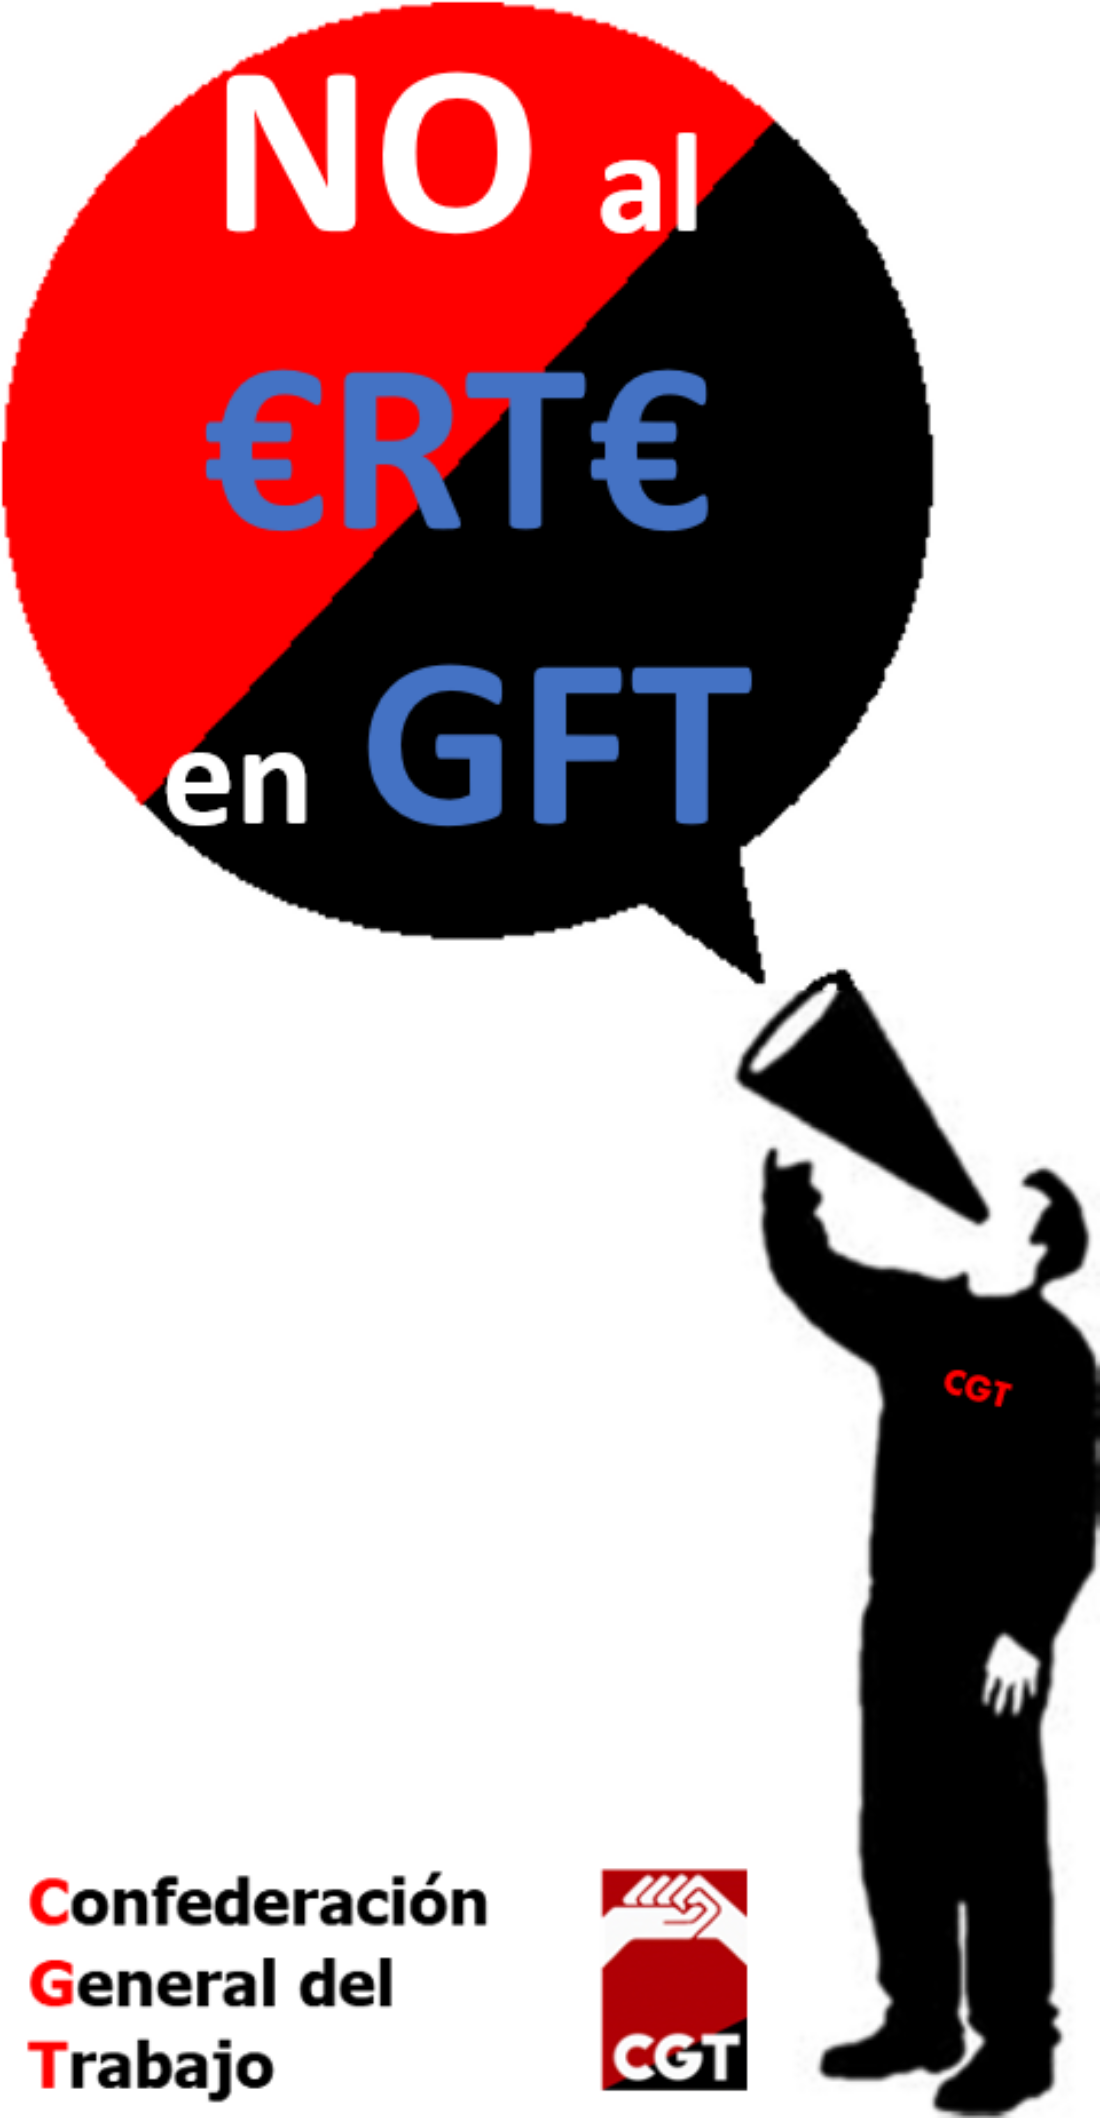 Desde CGT decimos NO al ERTE en GFT